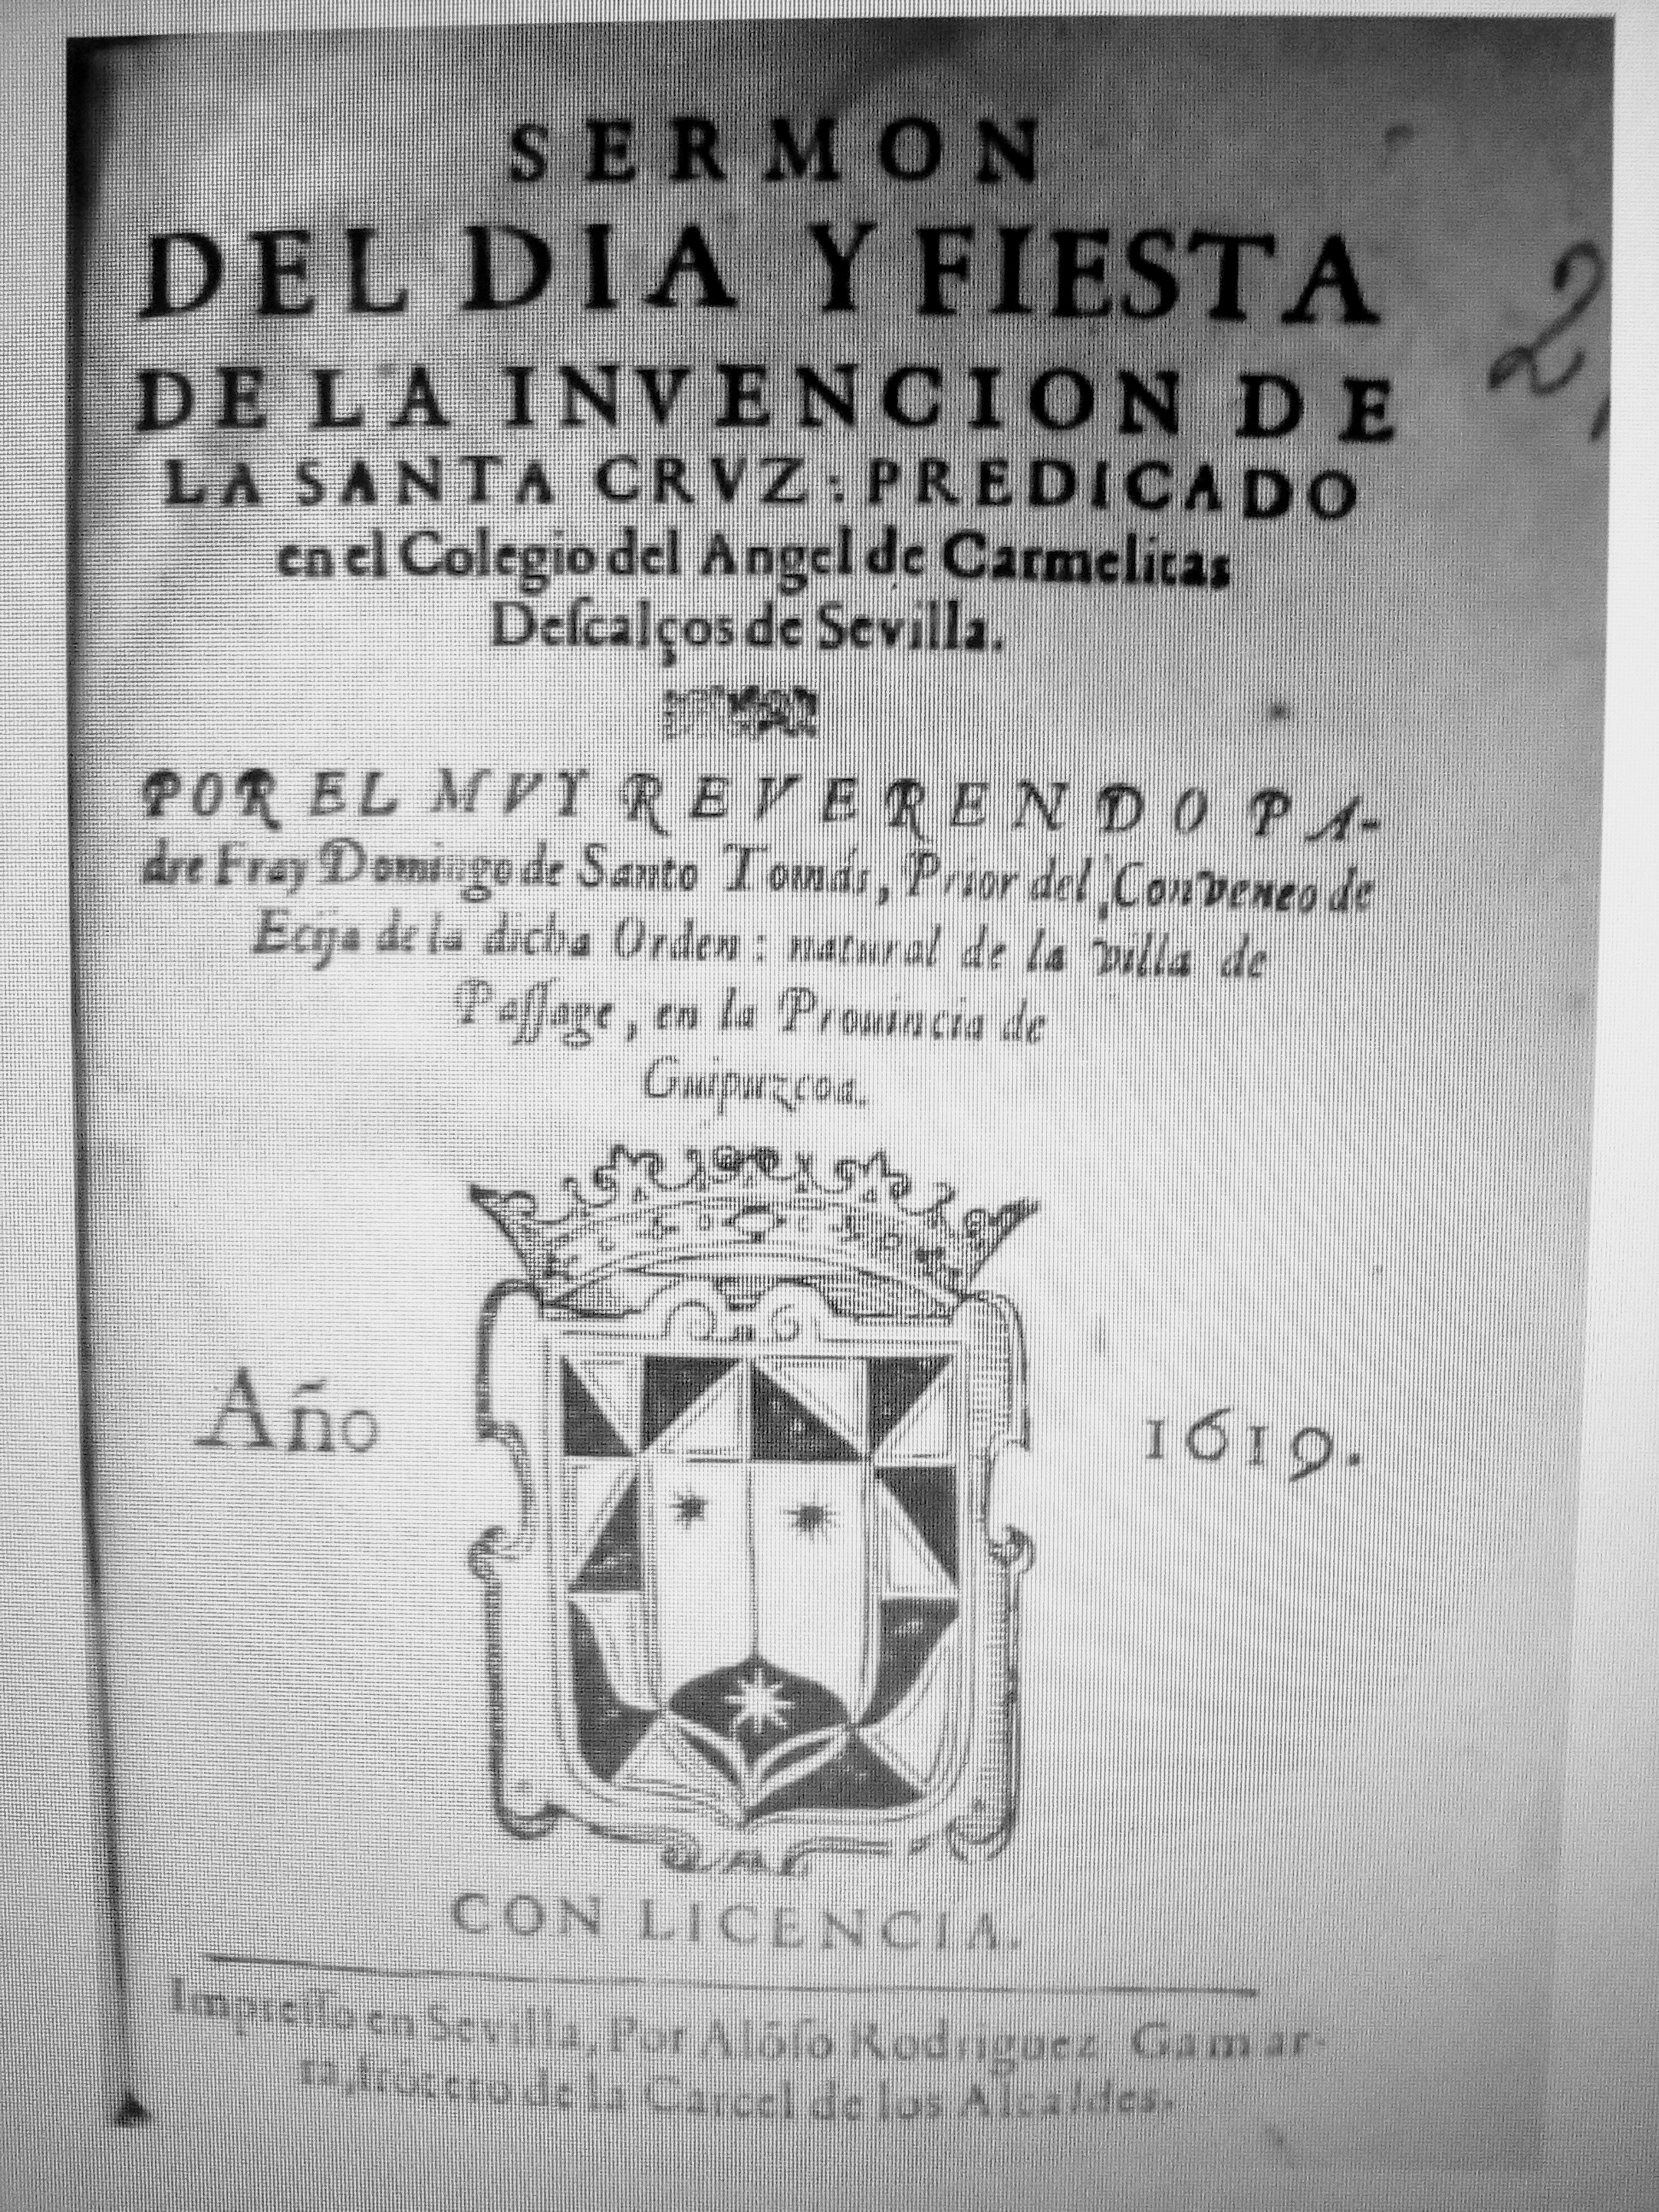 1. Portada del libro publicado en 1619 en Sevilla